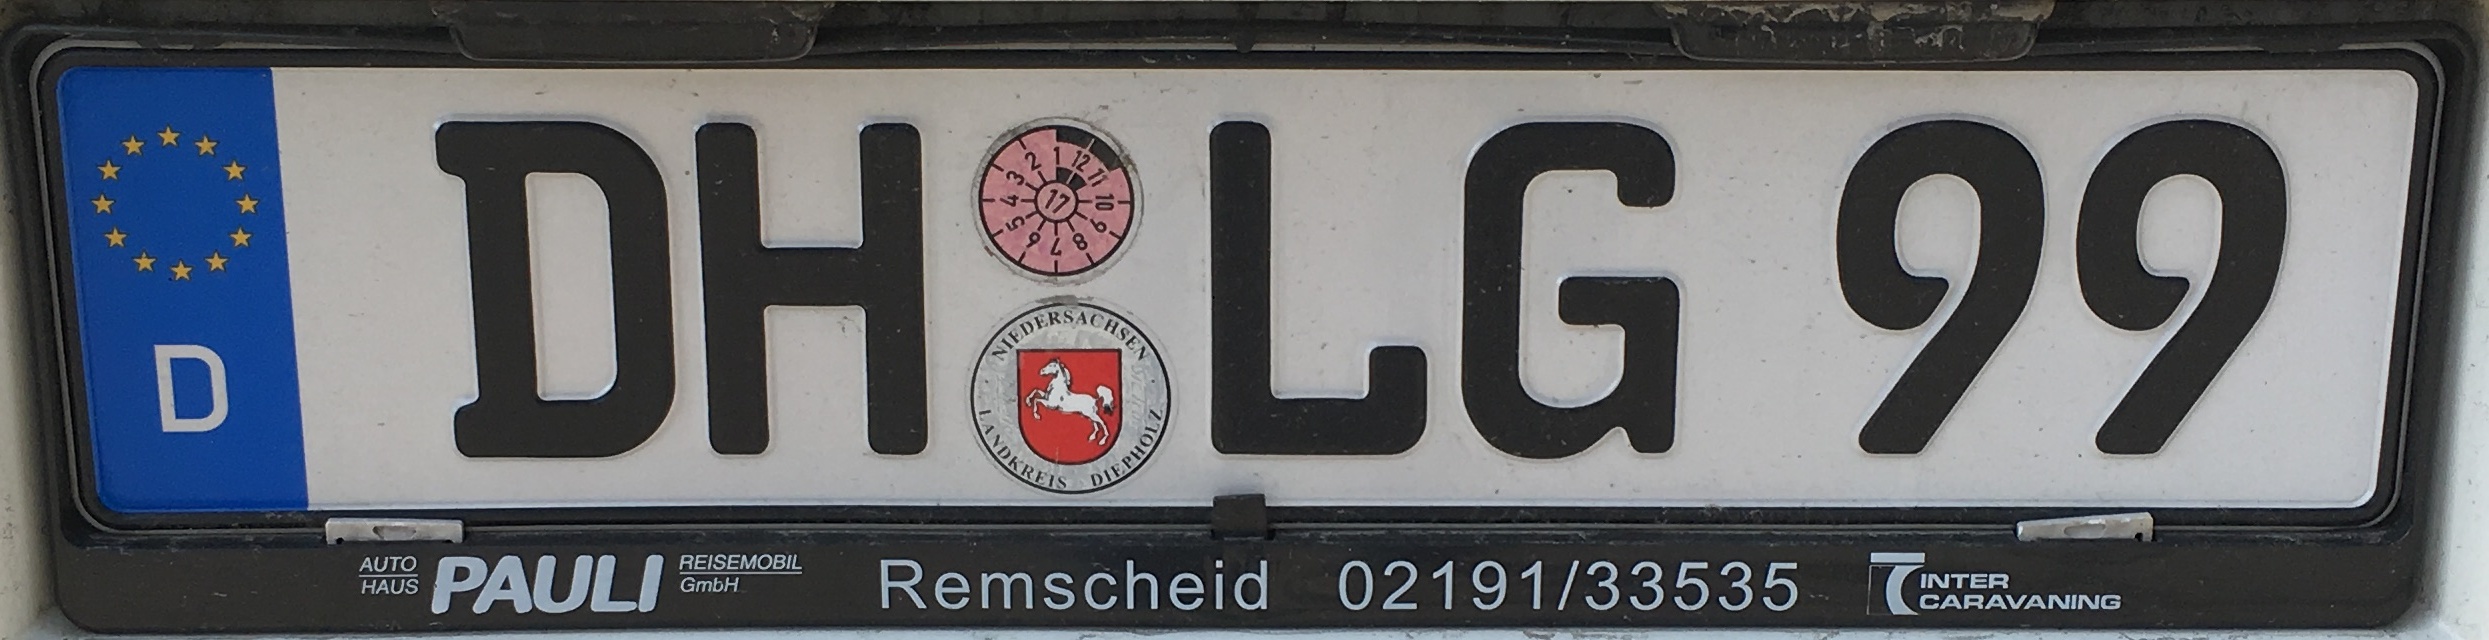 Registrační značky Německo - DH - Diepholz, foto: vlastní